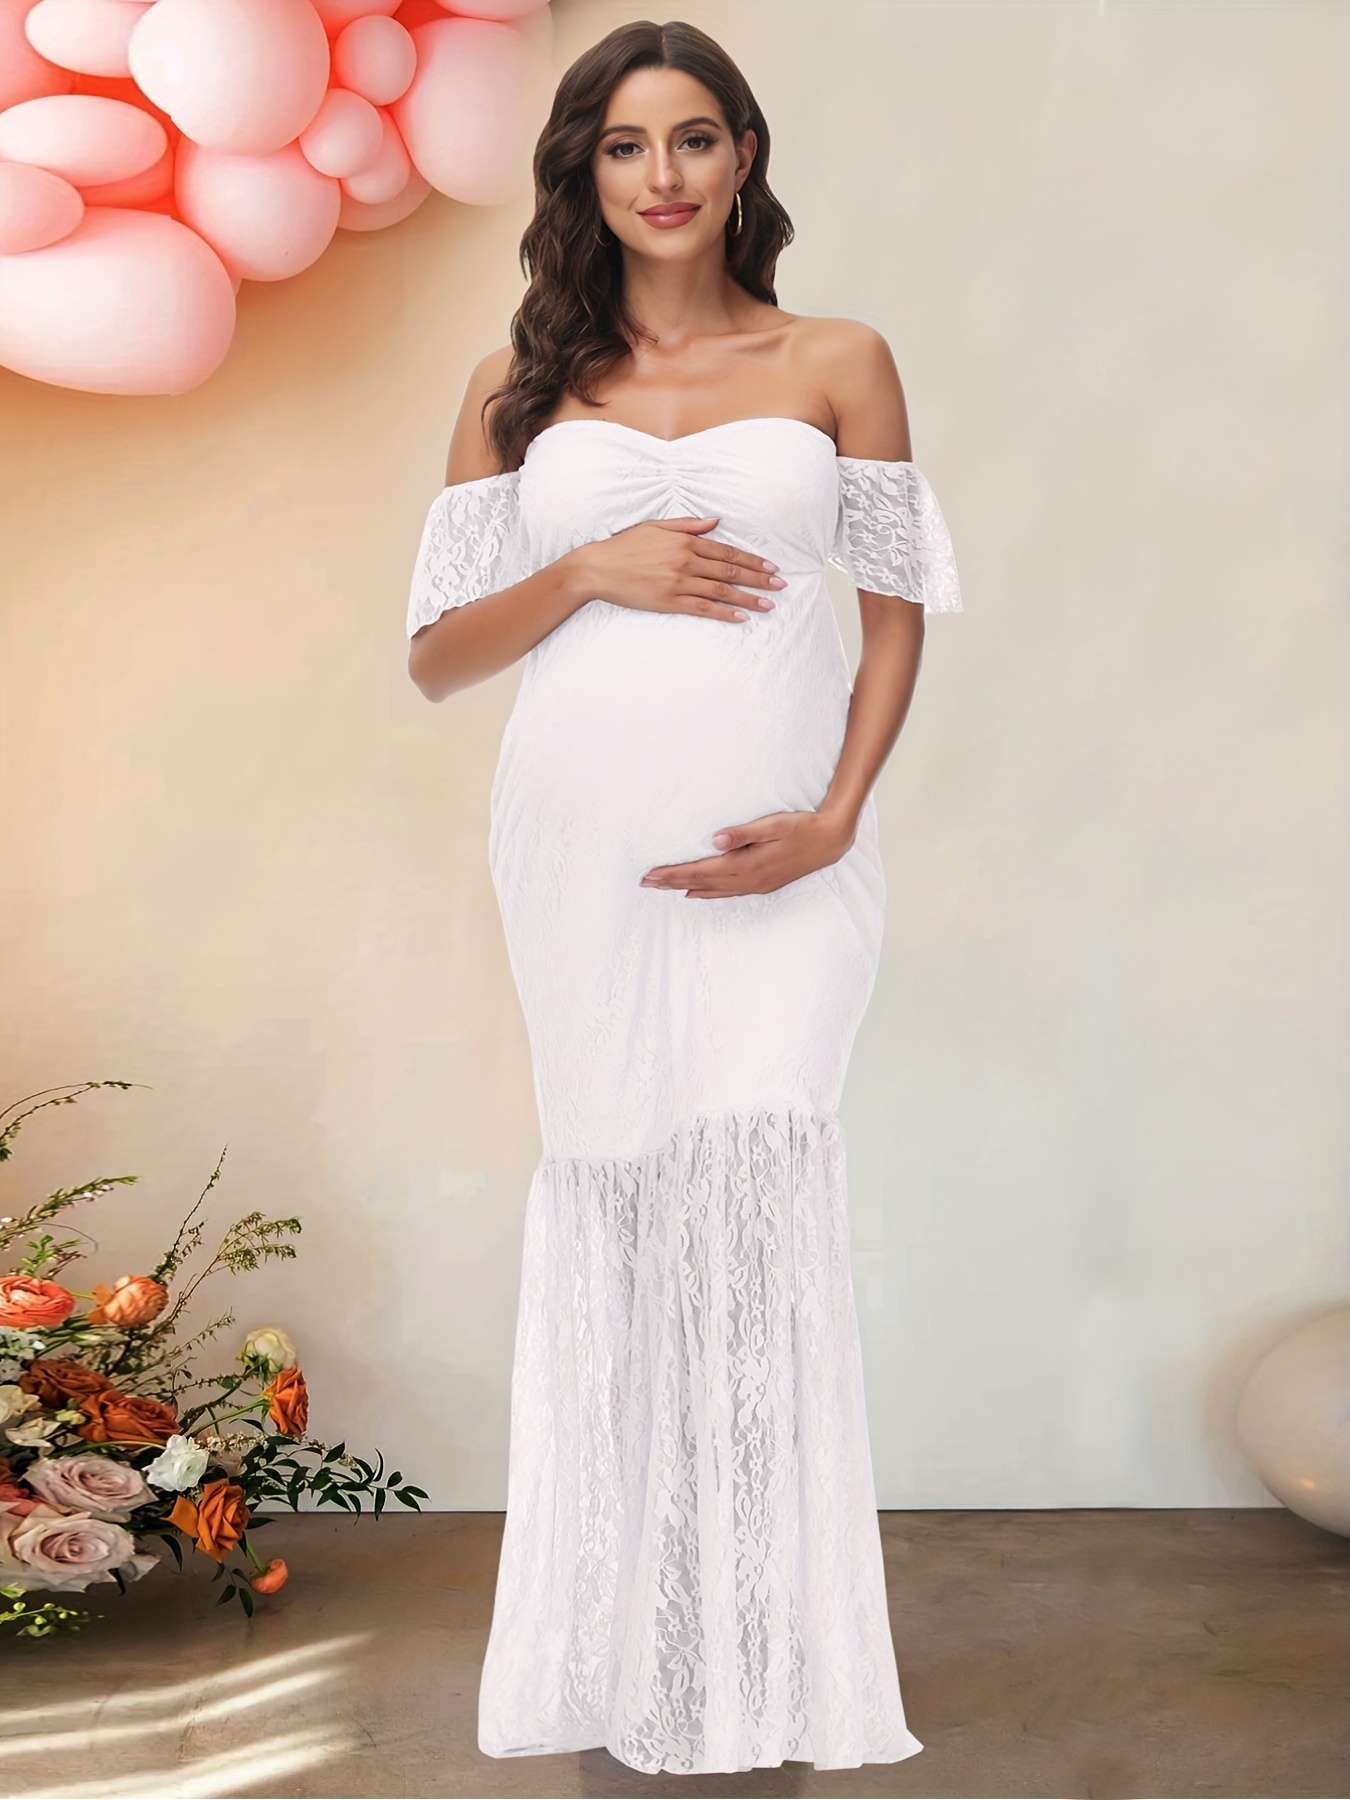 Women's Maternity Dress Solid Elegant Dress Waist Belt Fall - Temu